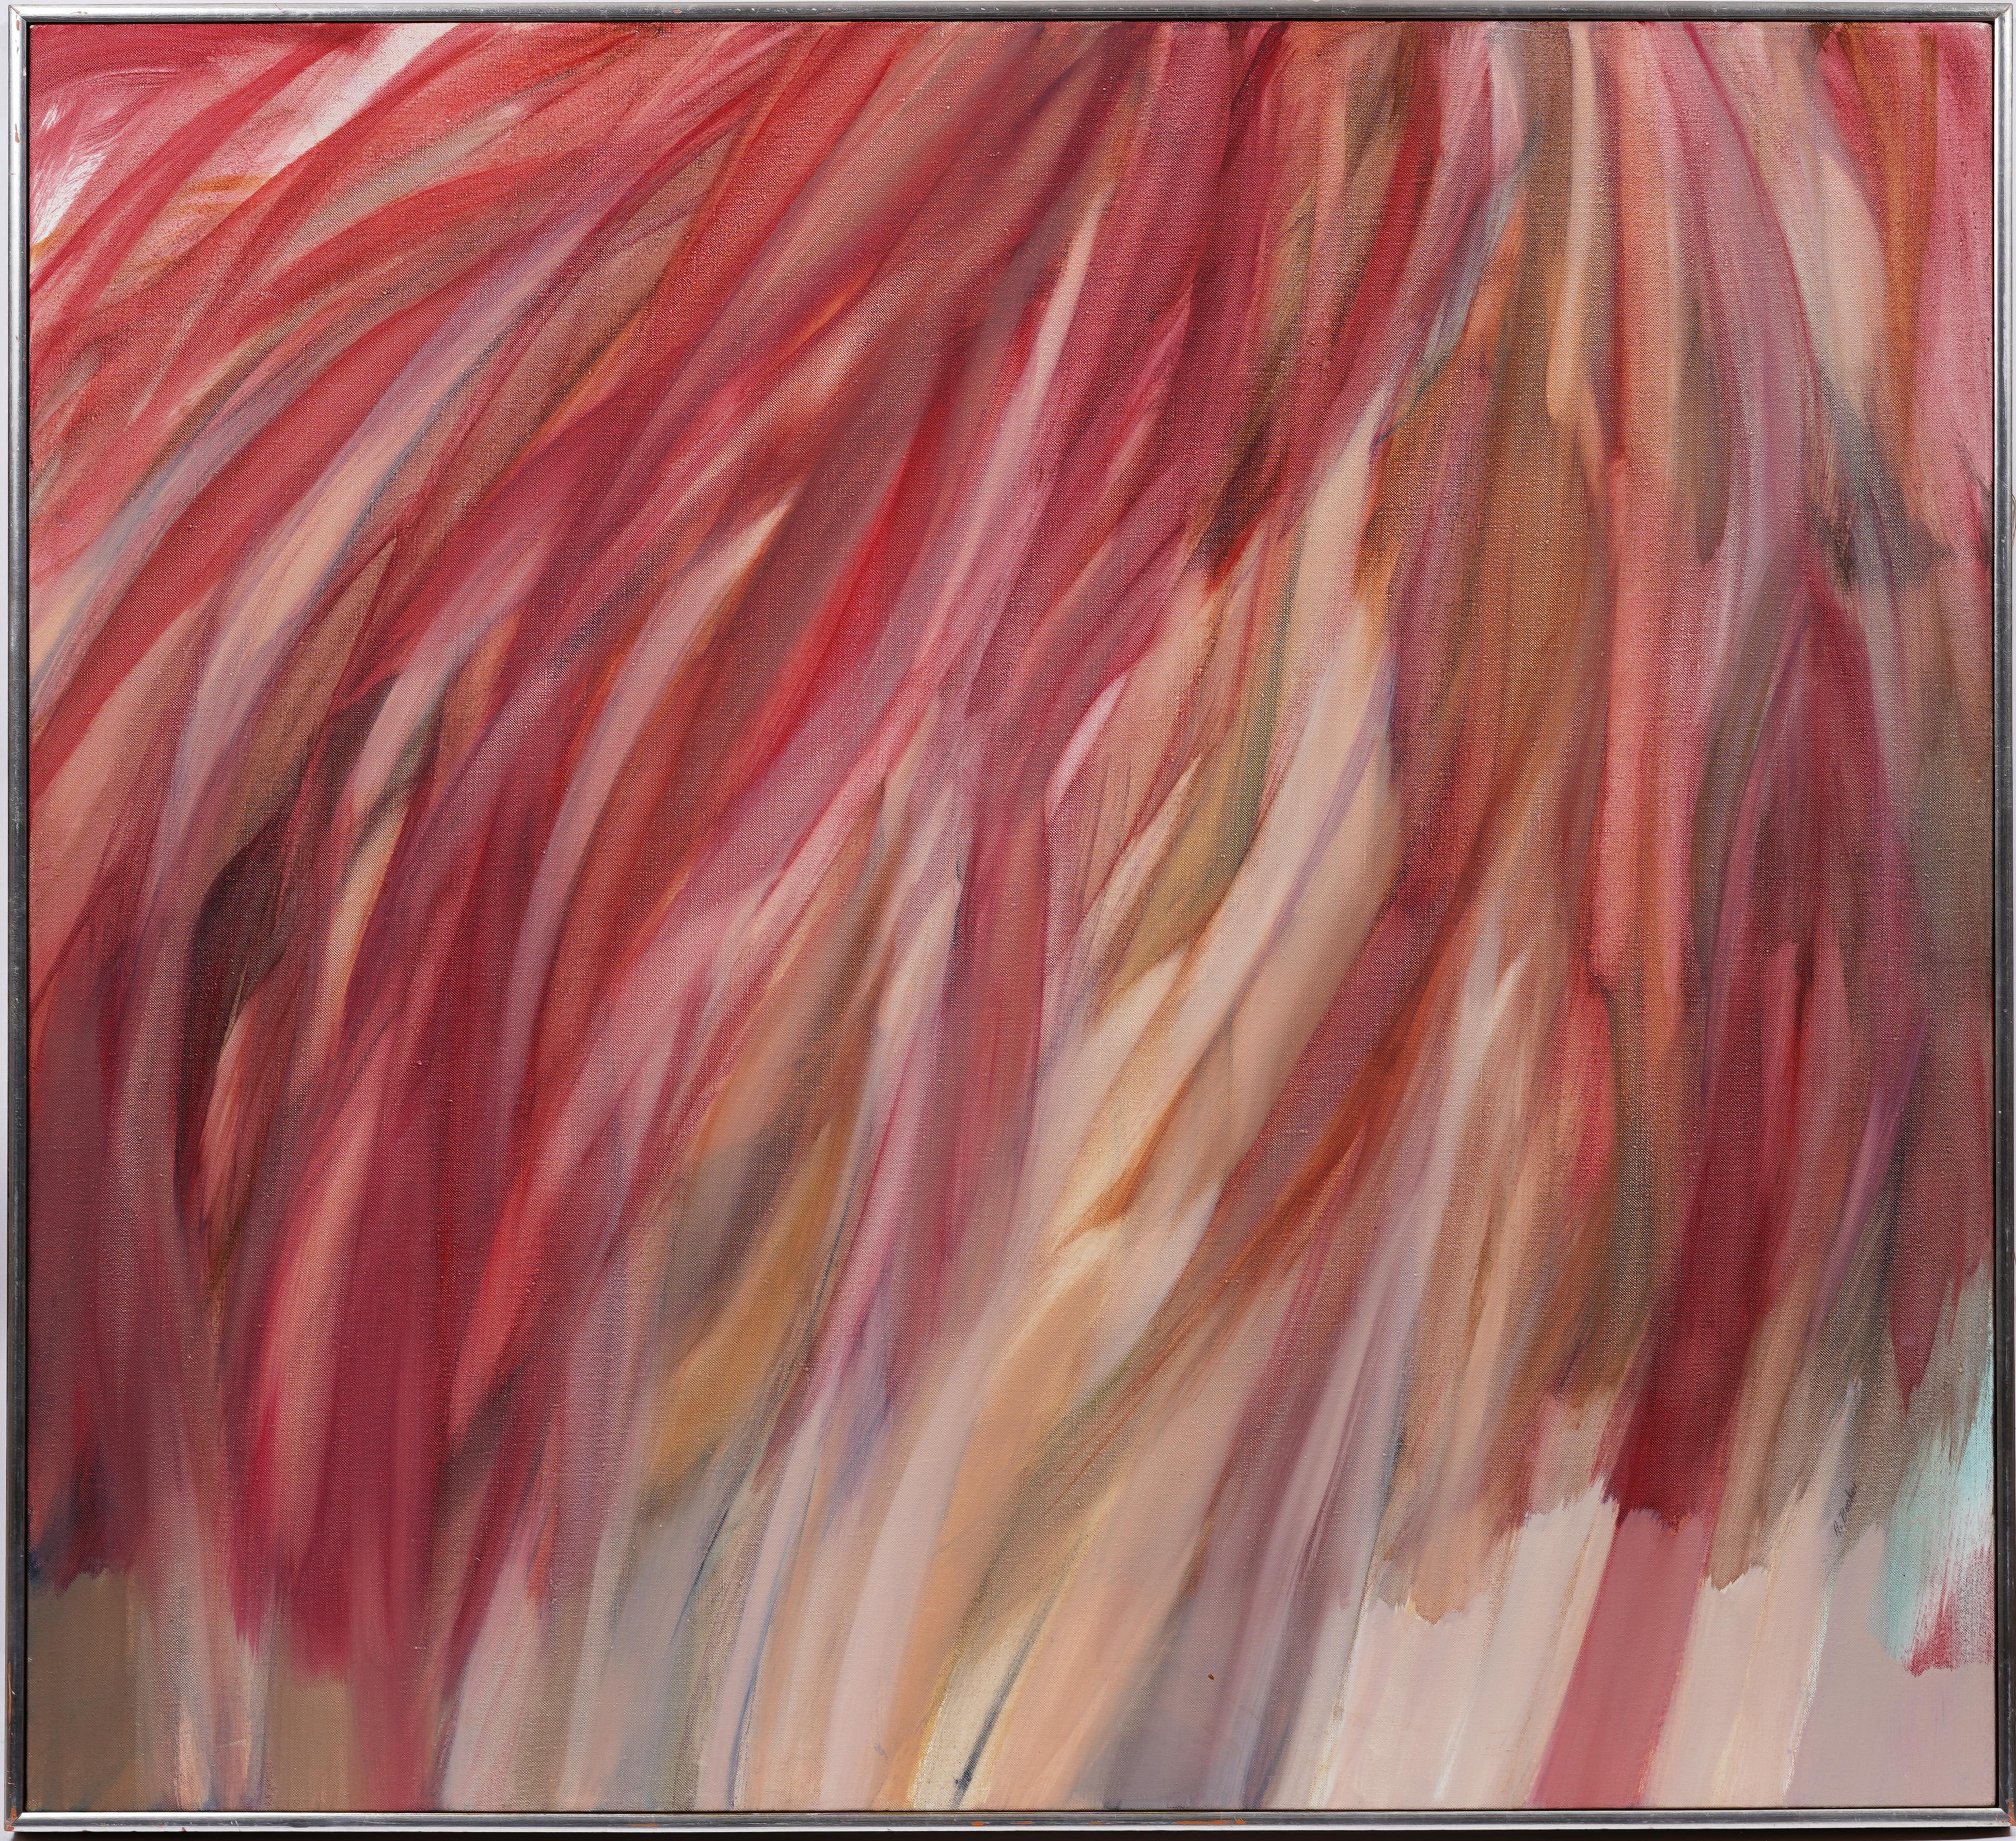 Ancienne peinture expressionniste abstraite américaine moderniste signée de la femme artiste - Painting de Adele Becker